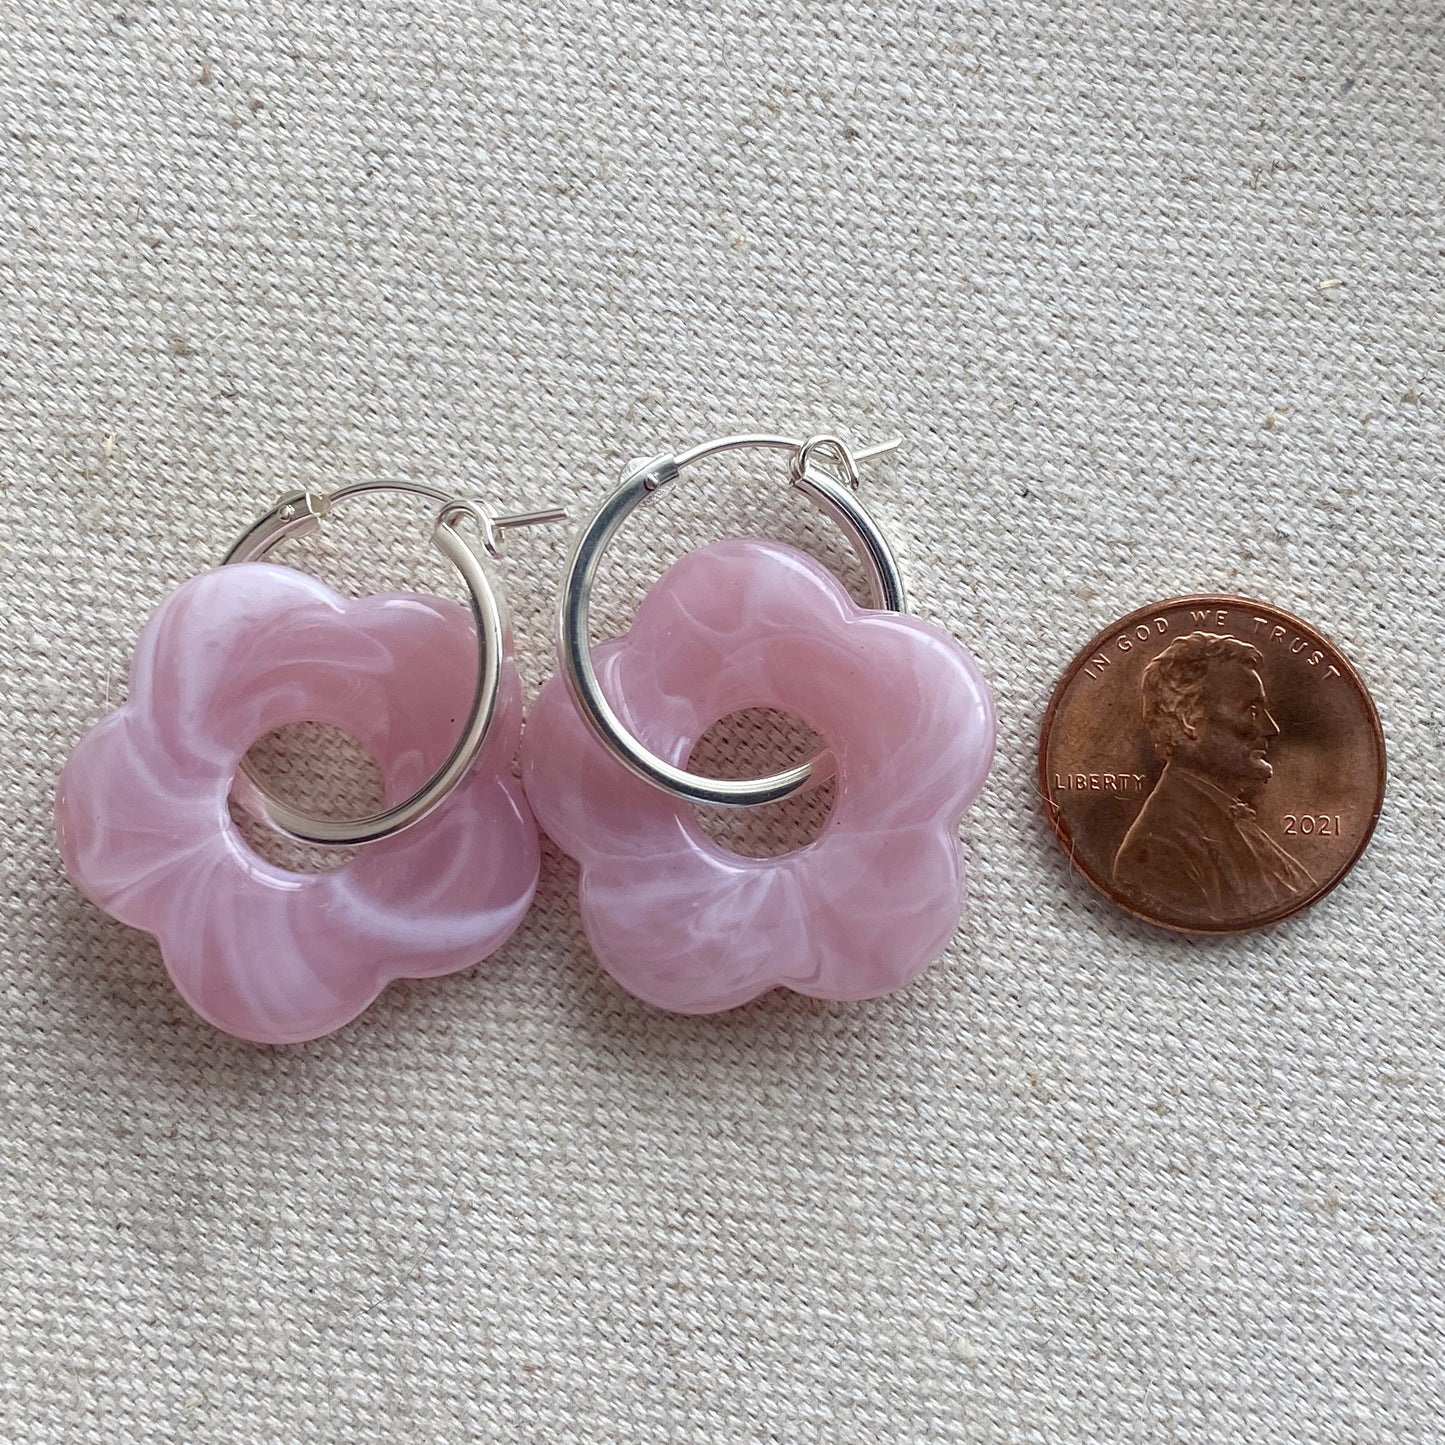 Flower Hoop Earrings Pink Green or Beige Trendy Sterling Silver Earrings